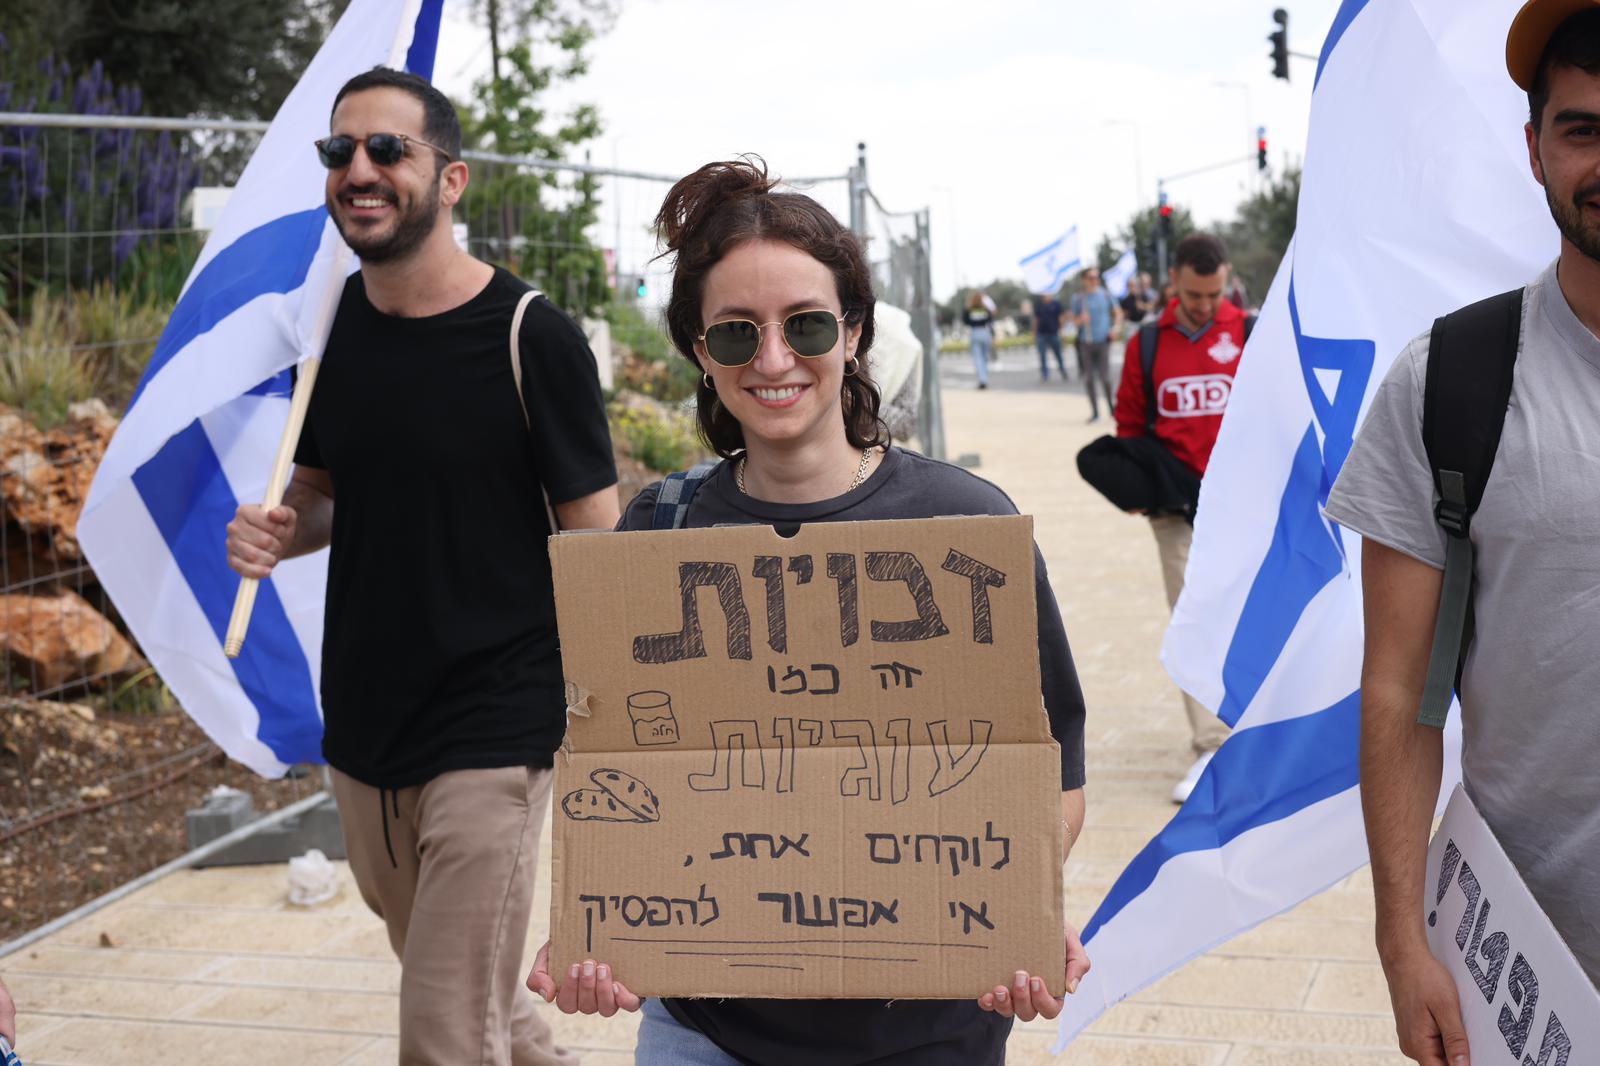 תחושה של ניצחון. מפגינהנגד ההפיכה המשטרית אתמול בירושלים (צילום: אורן זיו)